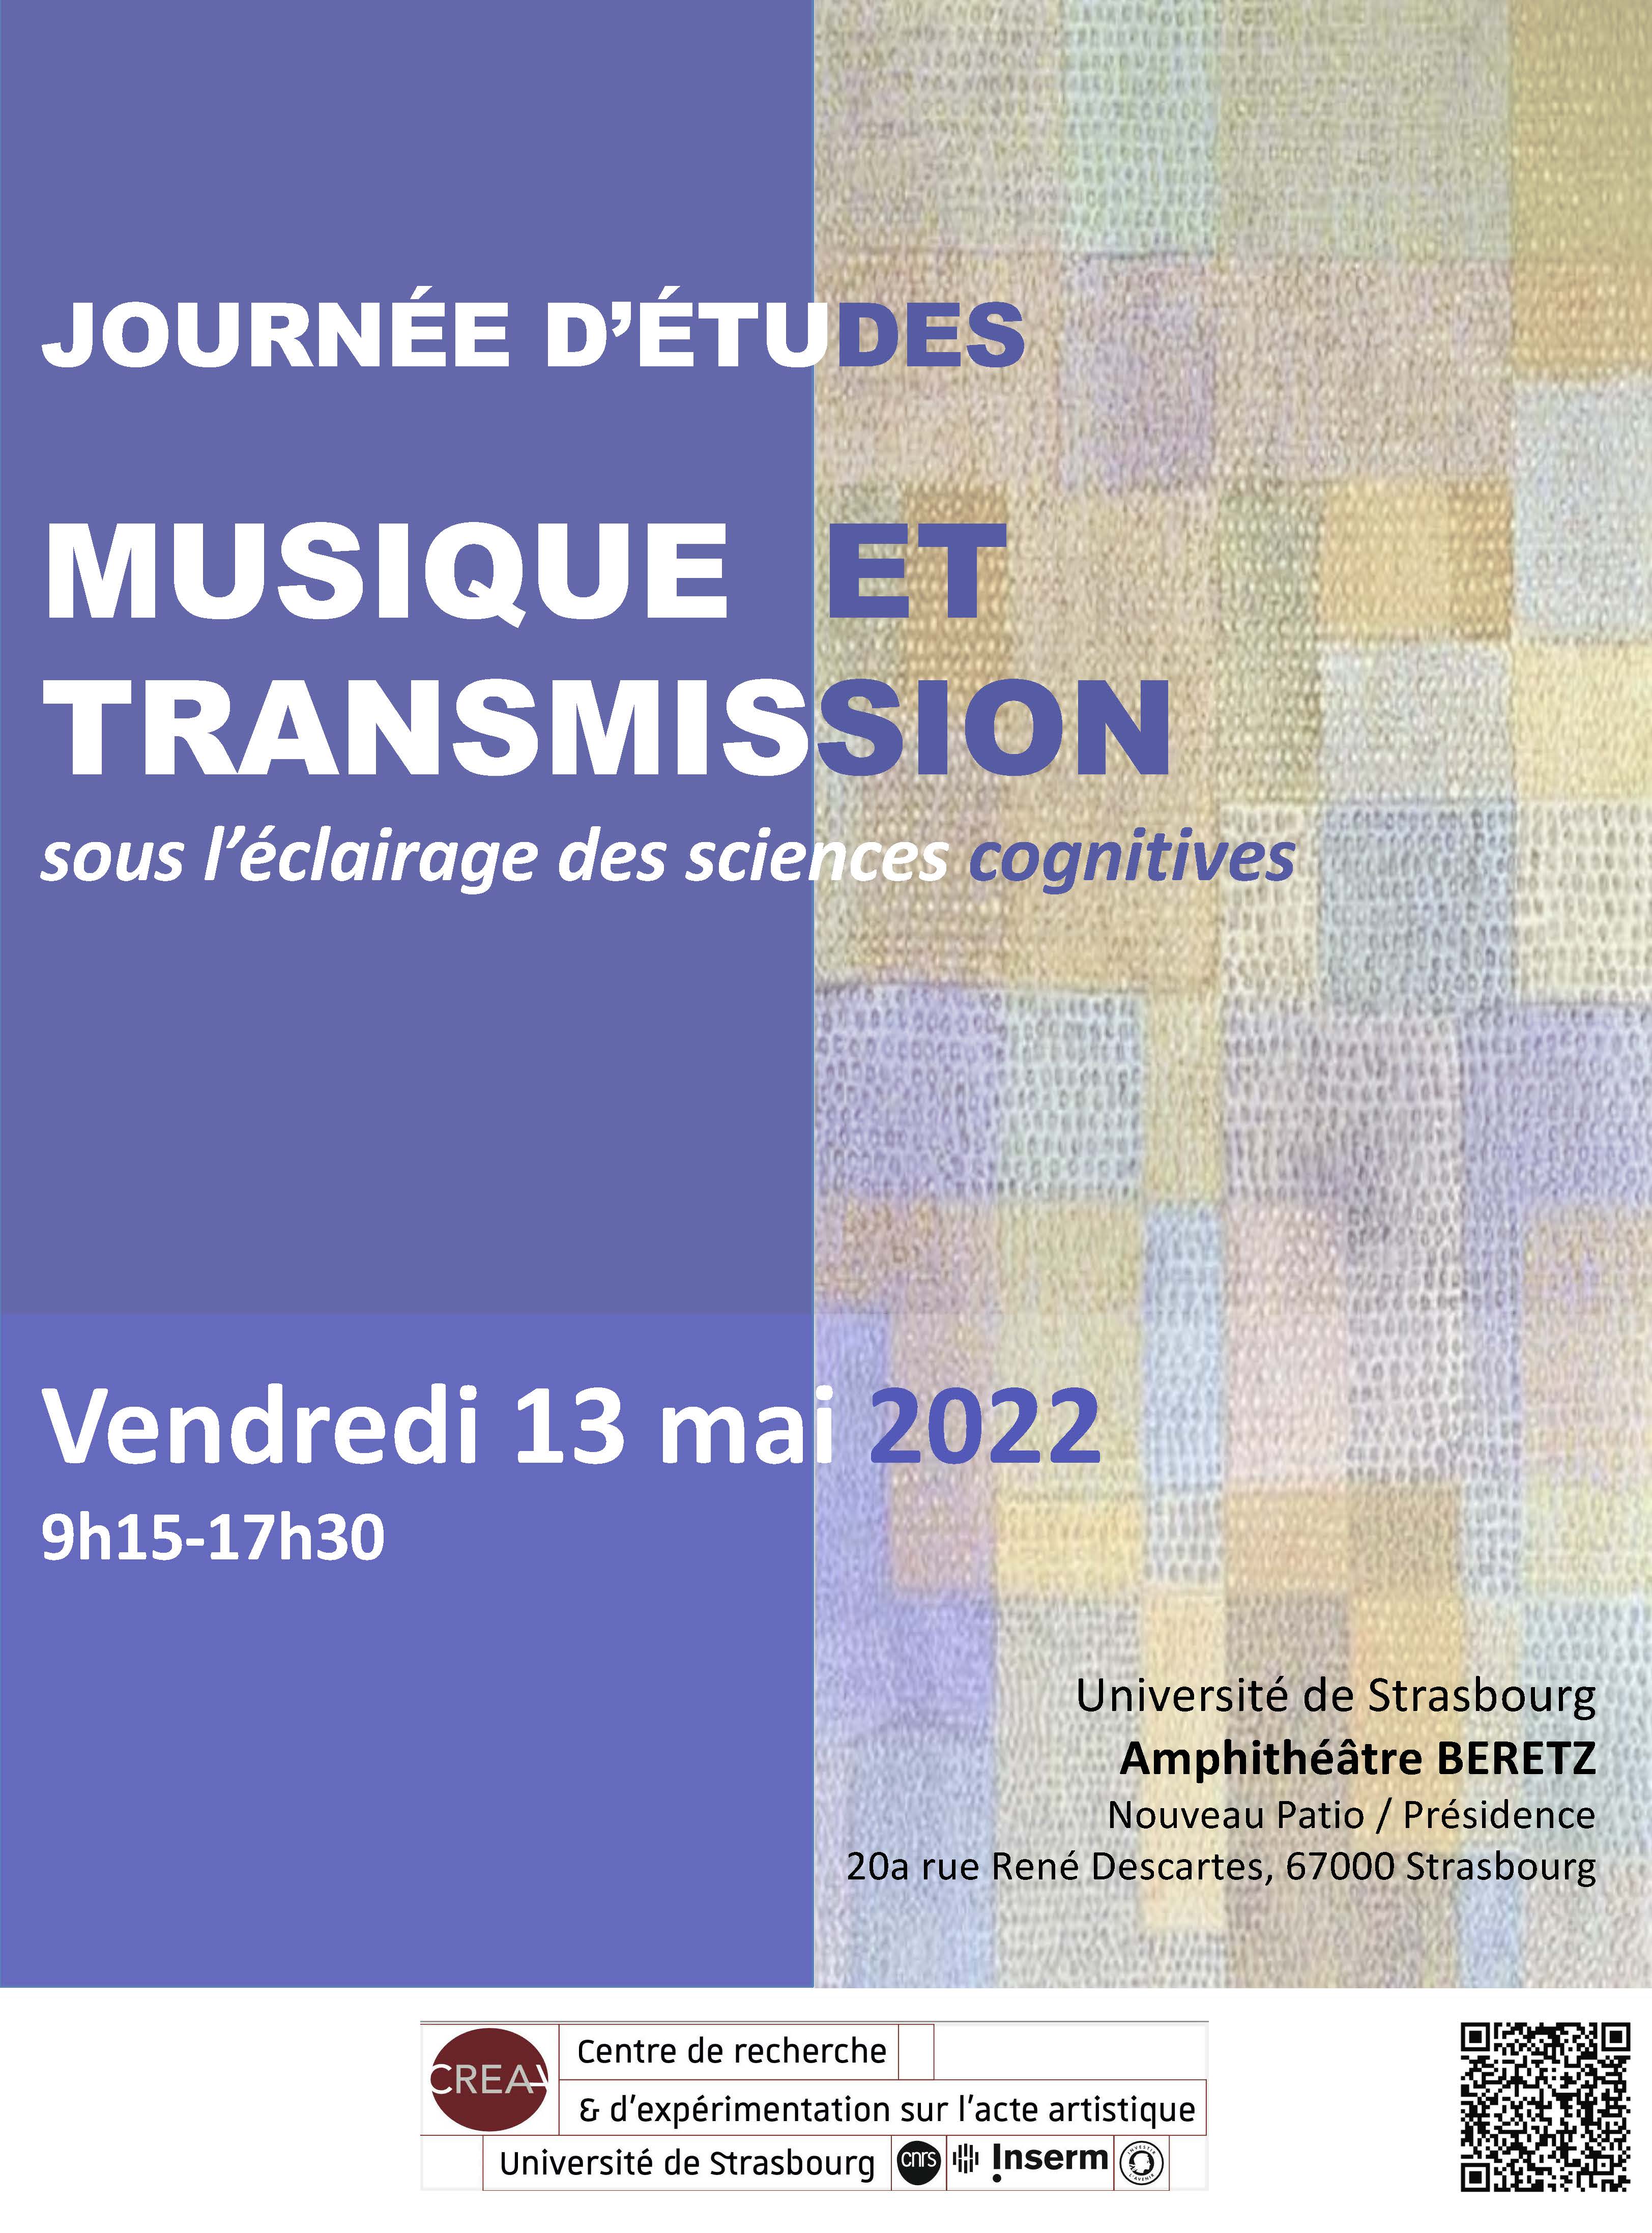 Journée d'études "Musique et transmission sous l'éclairage des sciences cognitives"